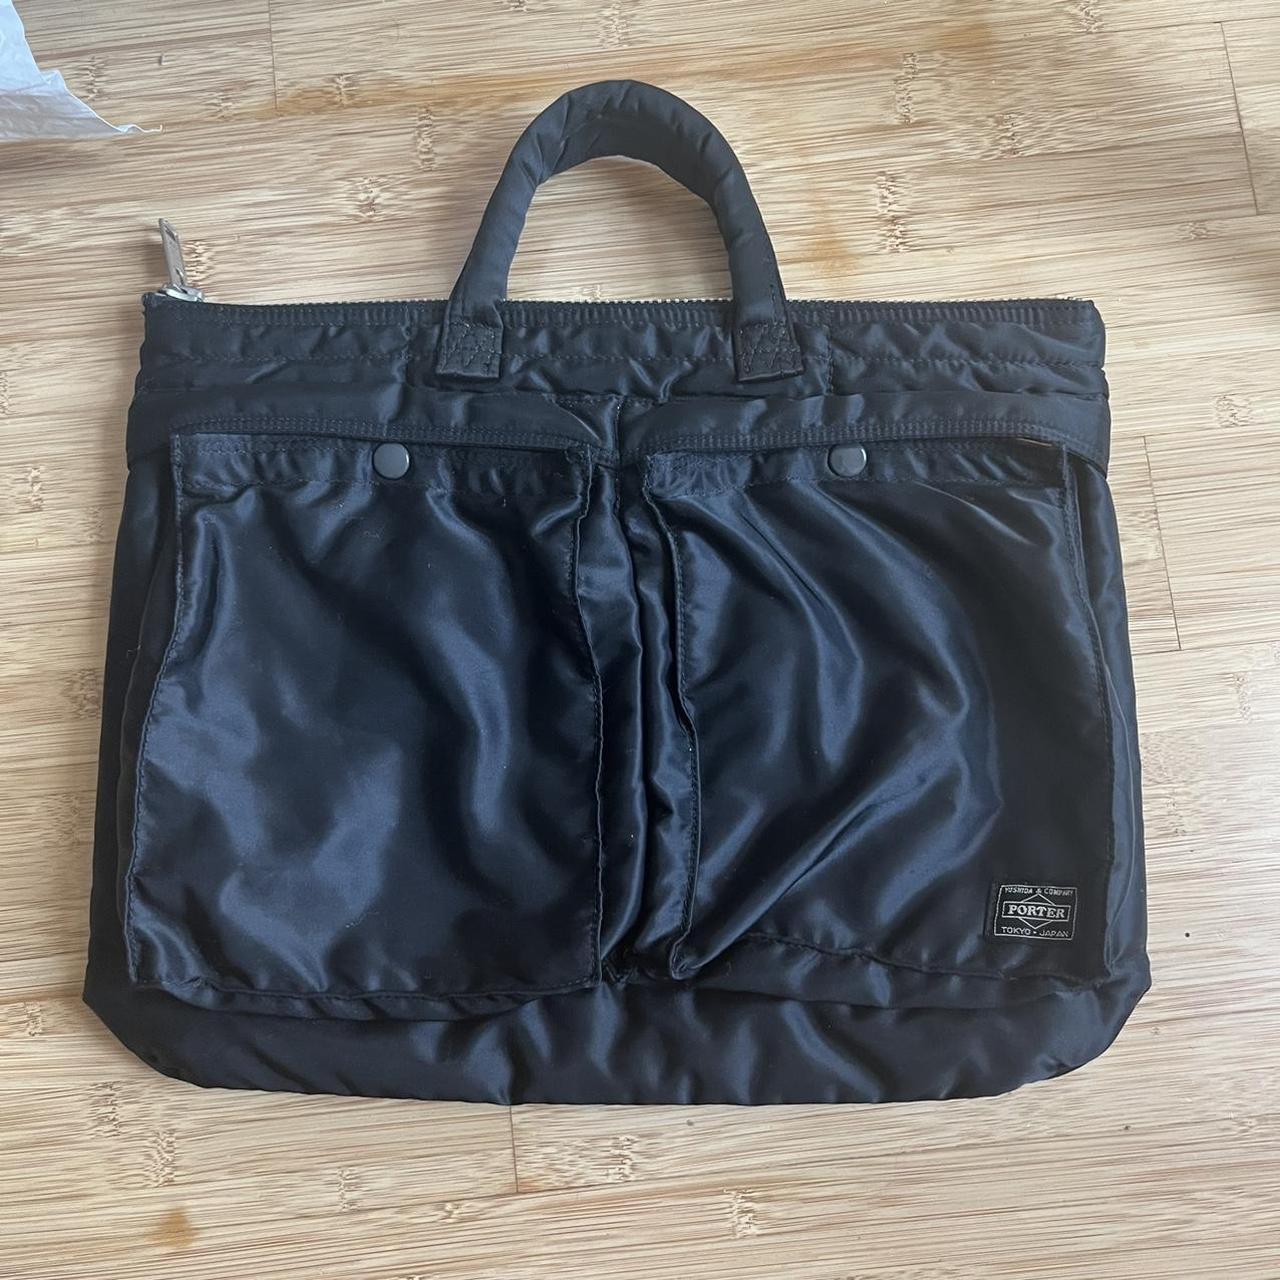 Product Image 1 - Porter Yoshida Black Nylon handbag
Amazing